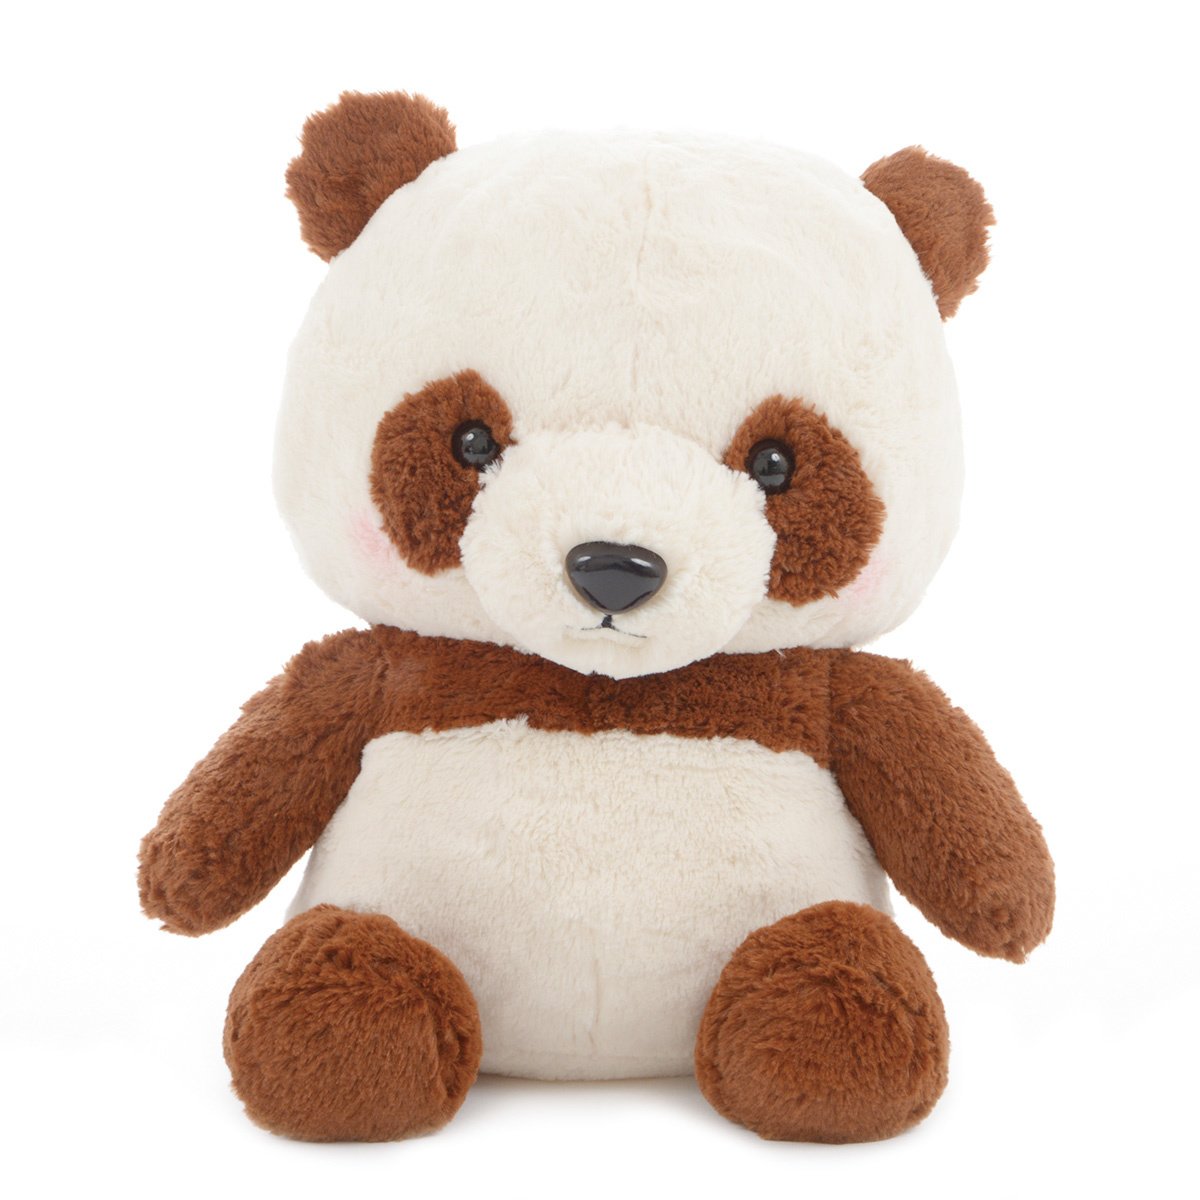 Plush Panda, Amuse, Honwaka Panda Baby, Chocolate Milk, Brown / White, 15 Inches